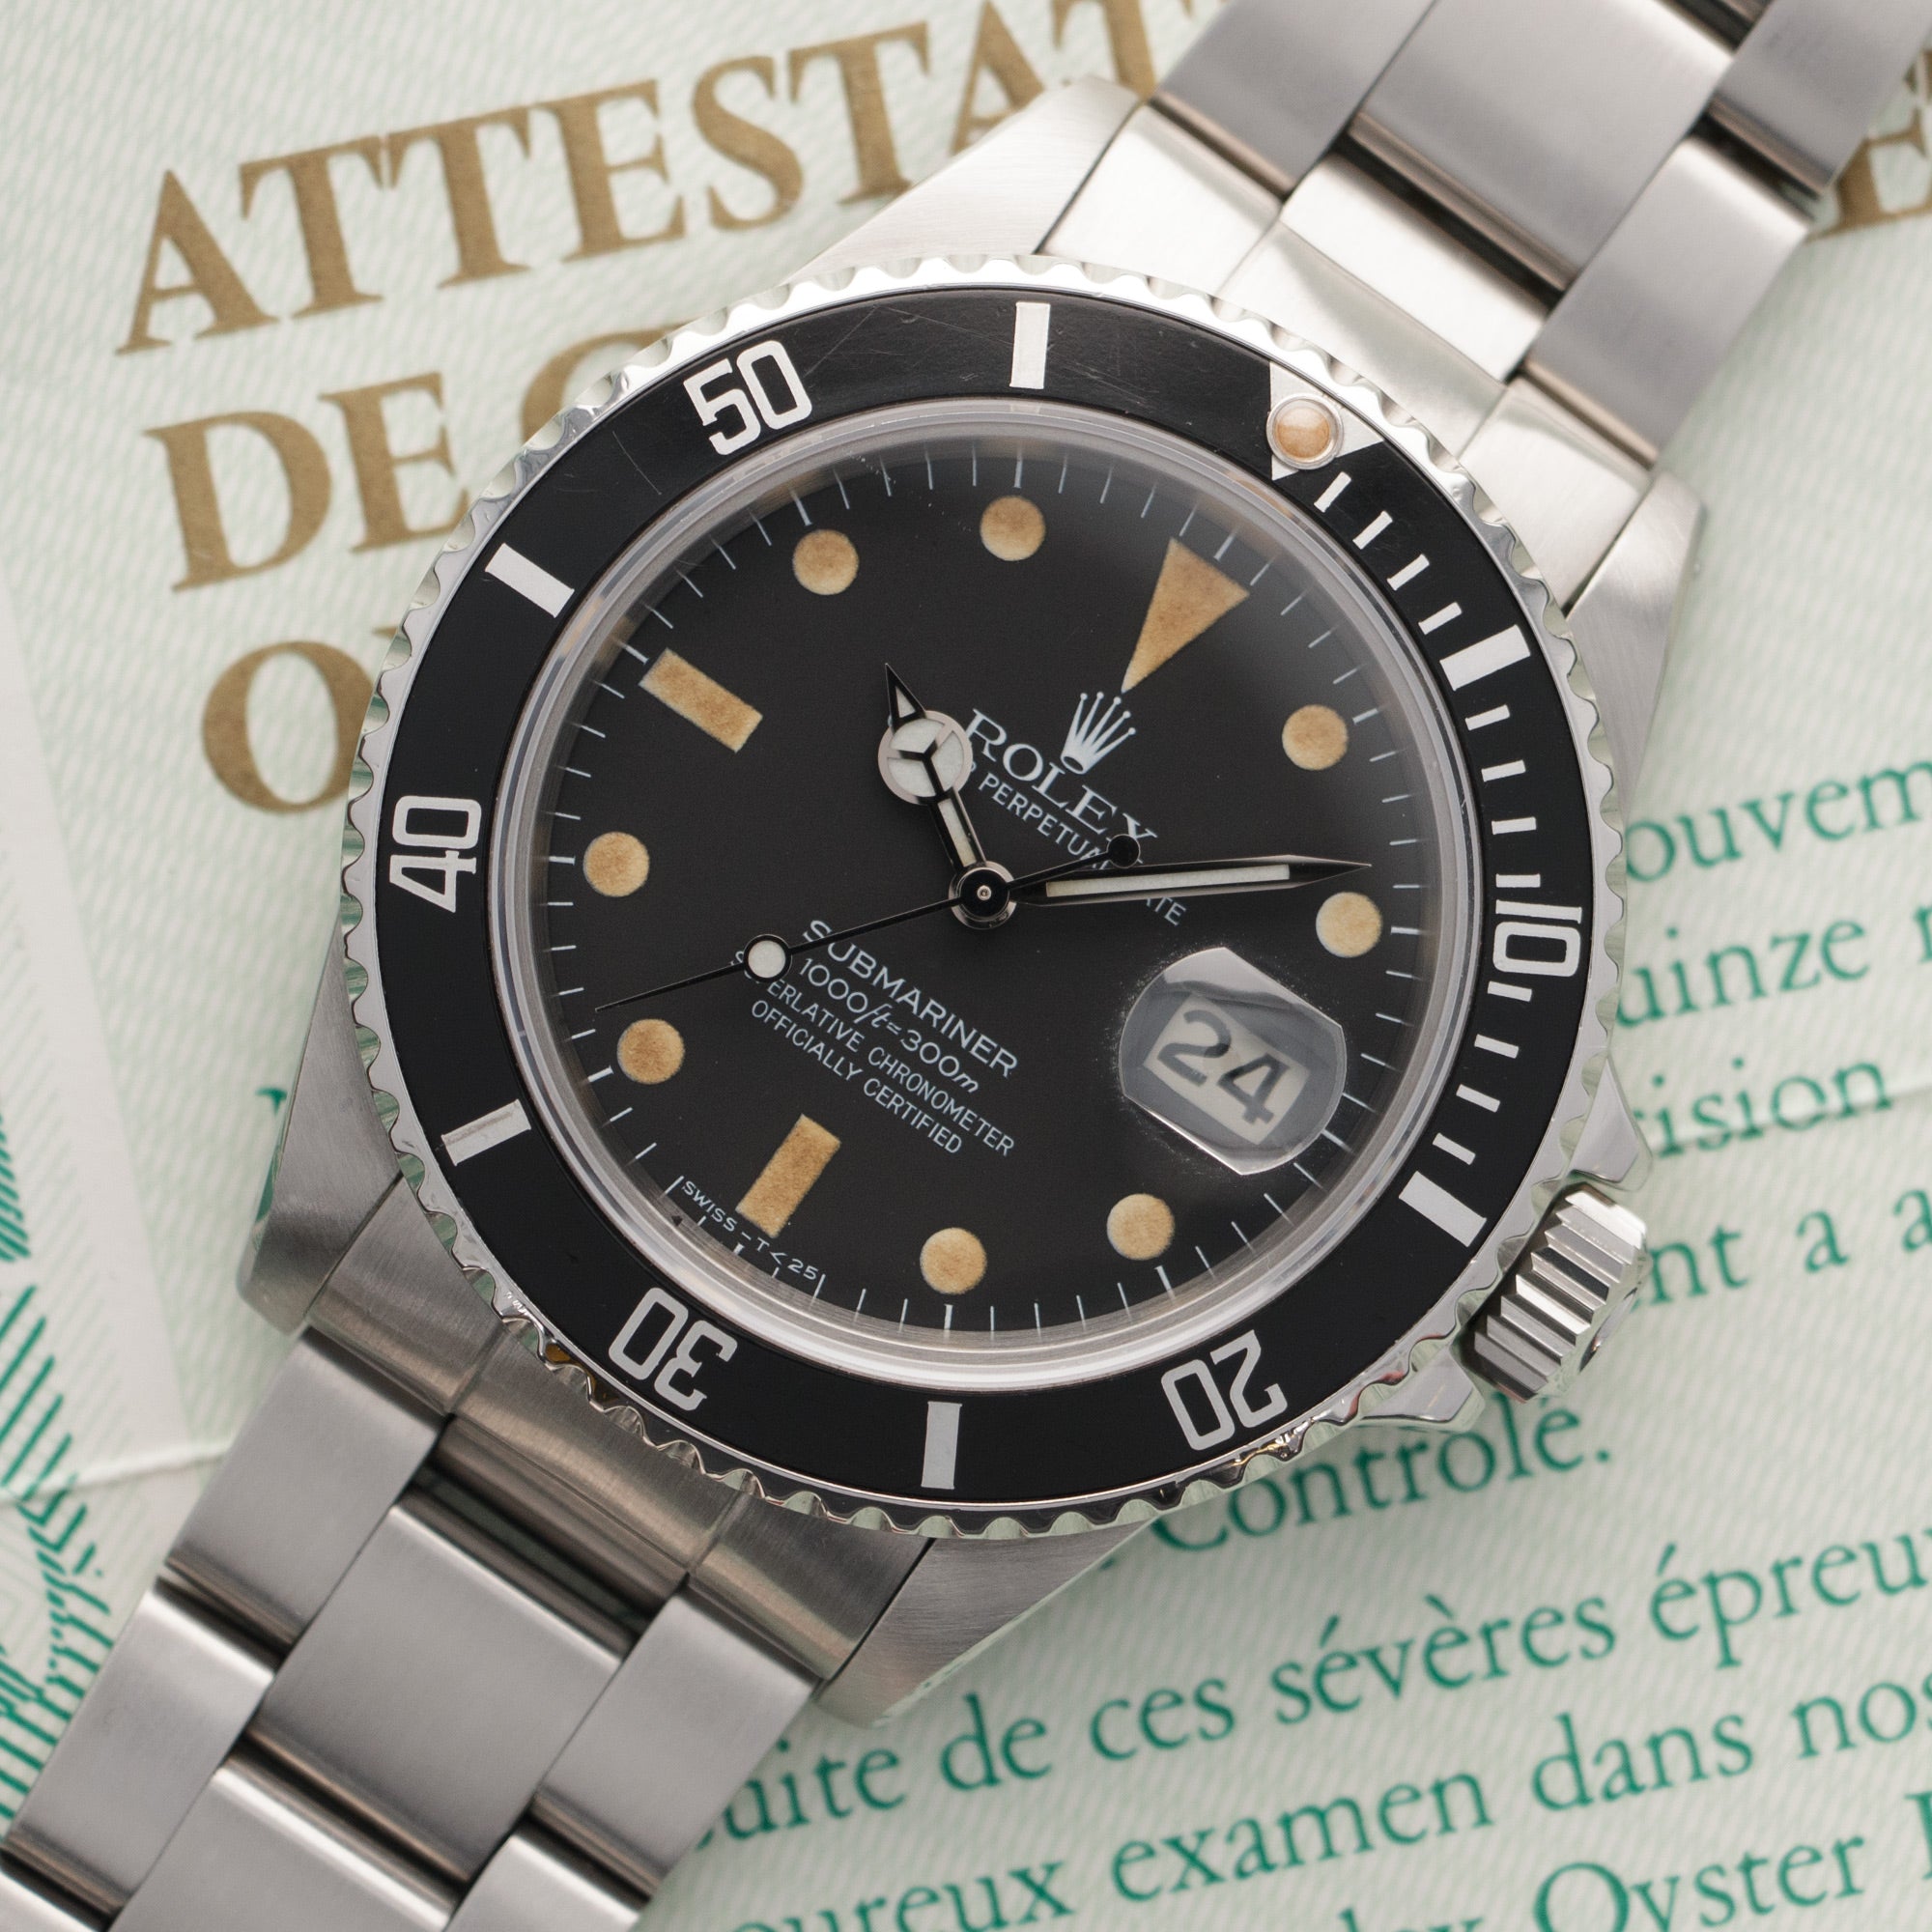 Rolex - Rolex Submariner Watch Ref. 16800, with Original Warranty Paper - The Keystone Watches